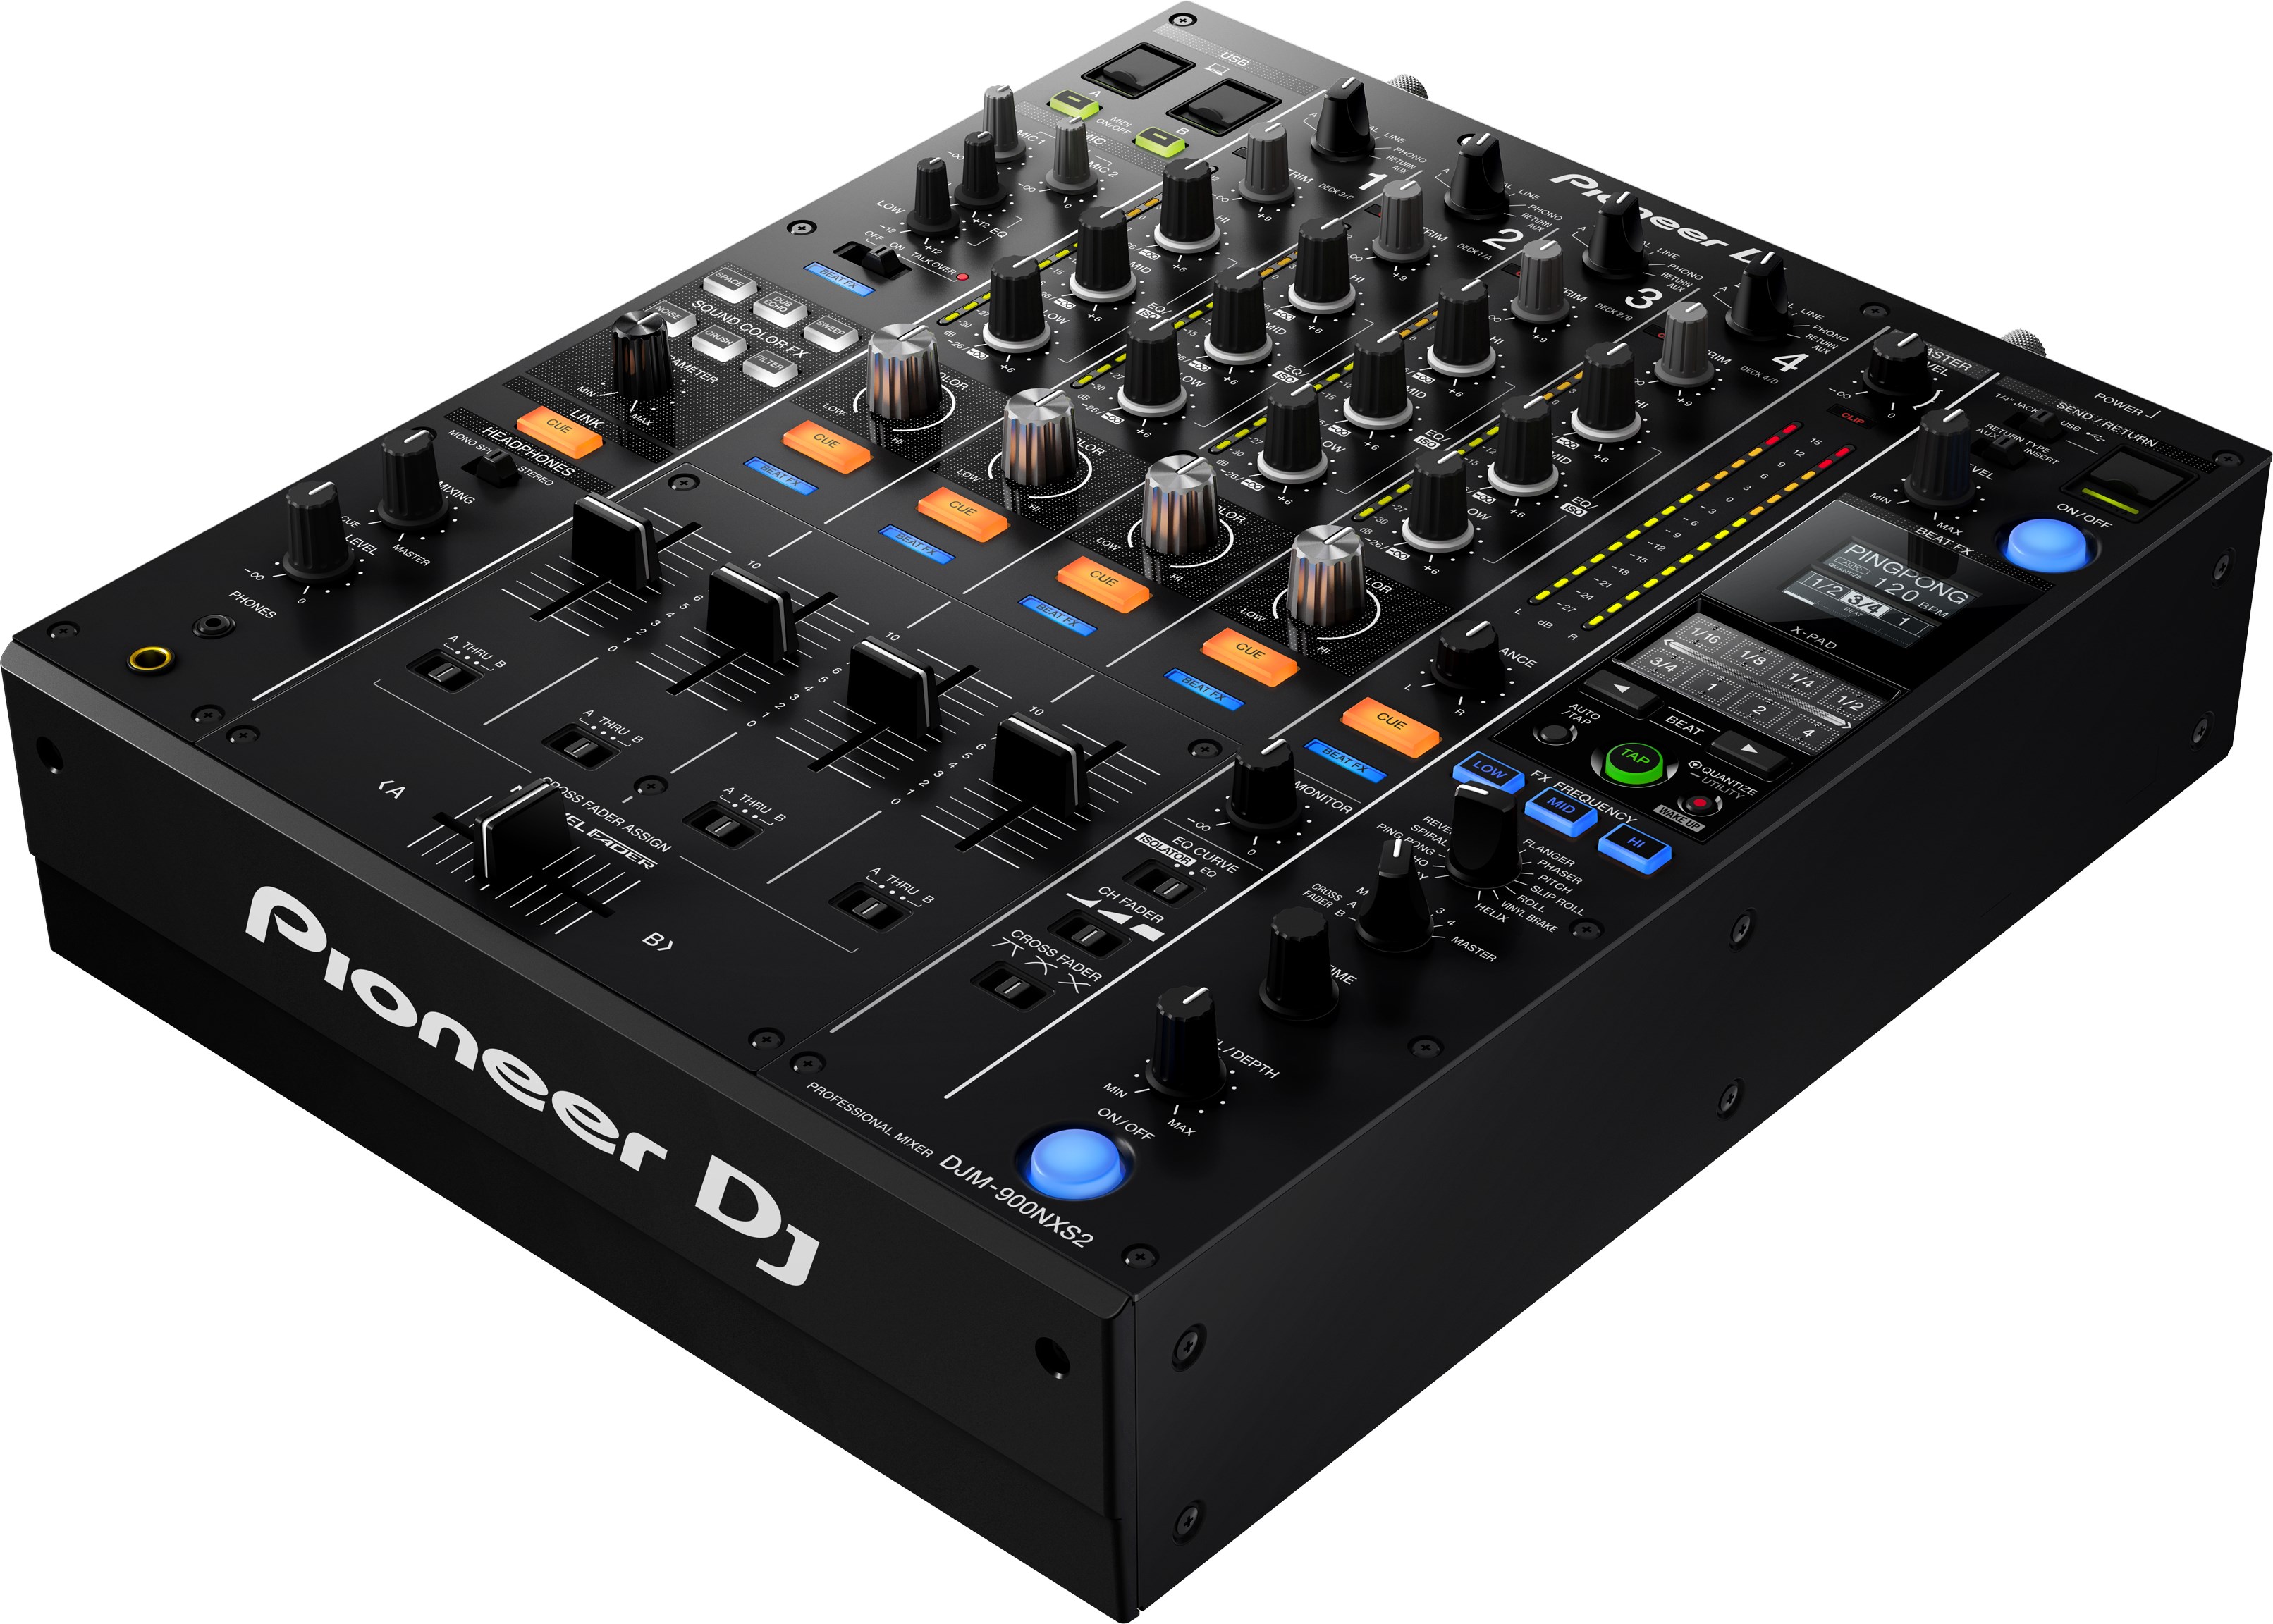 Pioneer Dj Djm-900nxs2 - DJ mixer - Variation 2